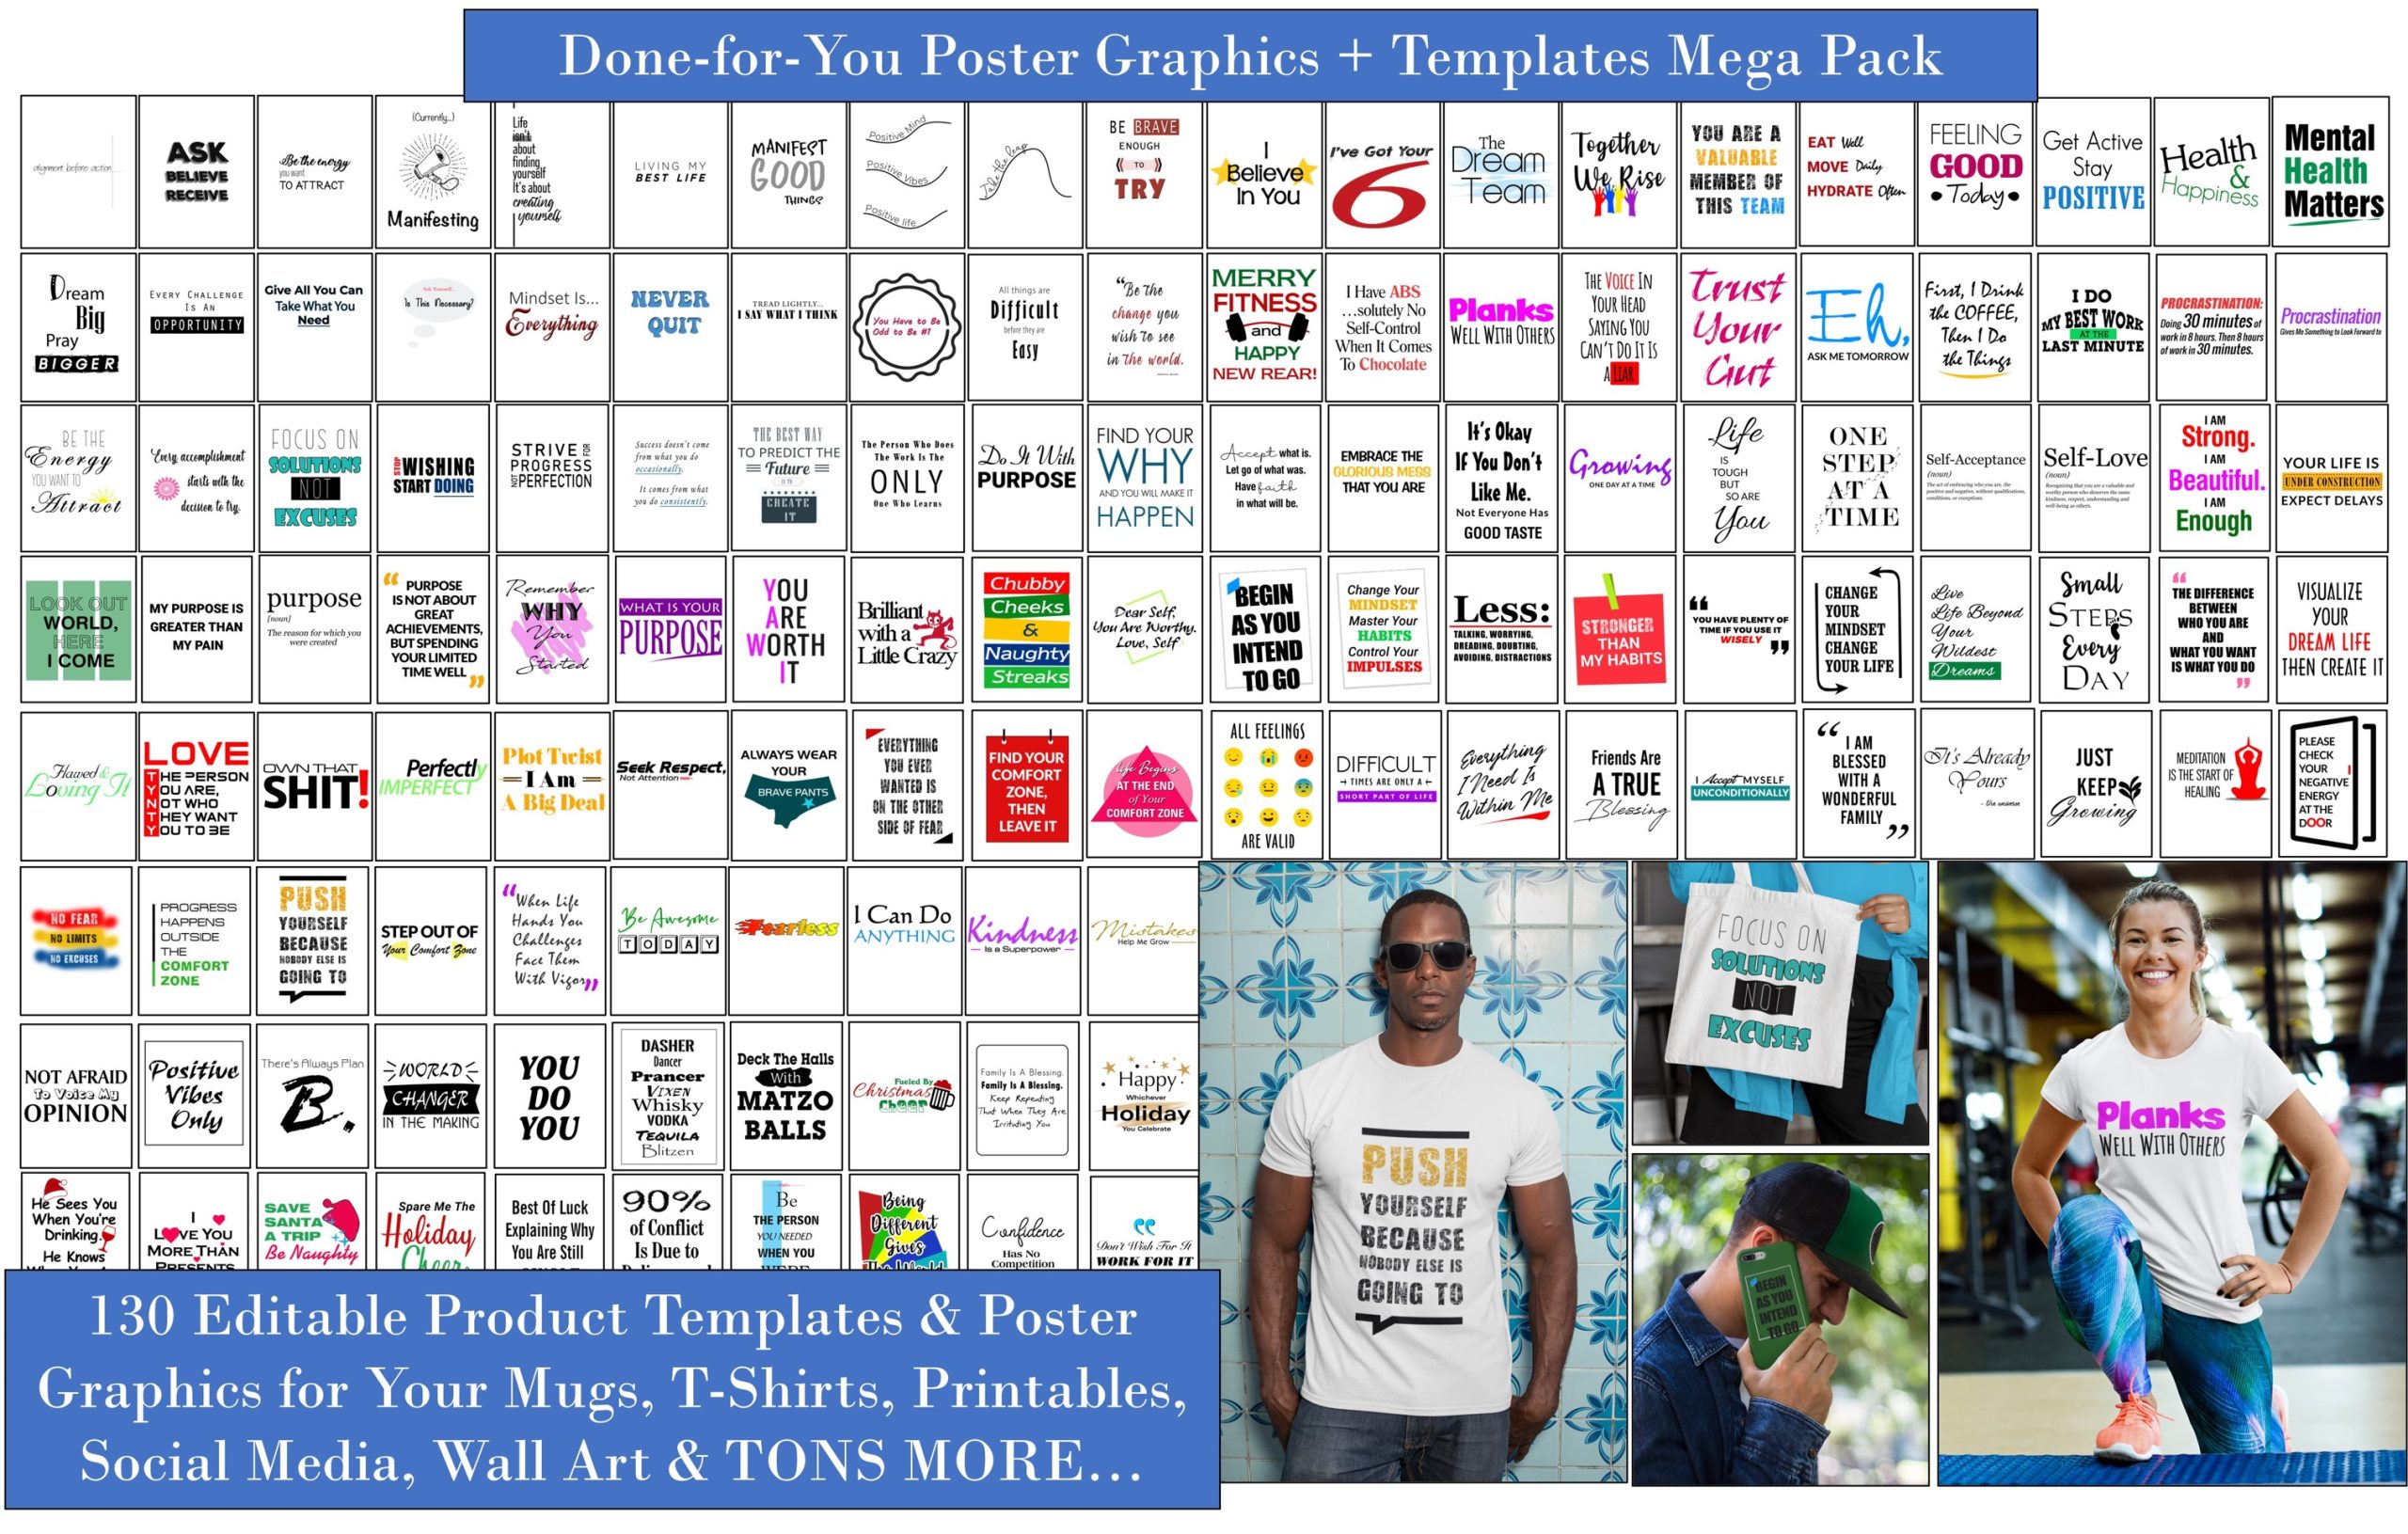 DFY Poster Graphics Templates Mega Pack fi scaled Entrepreneur's Kit Hub